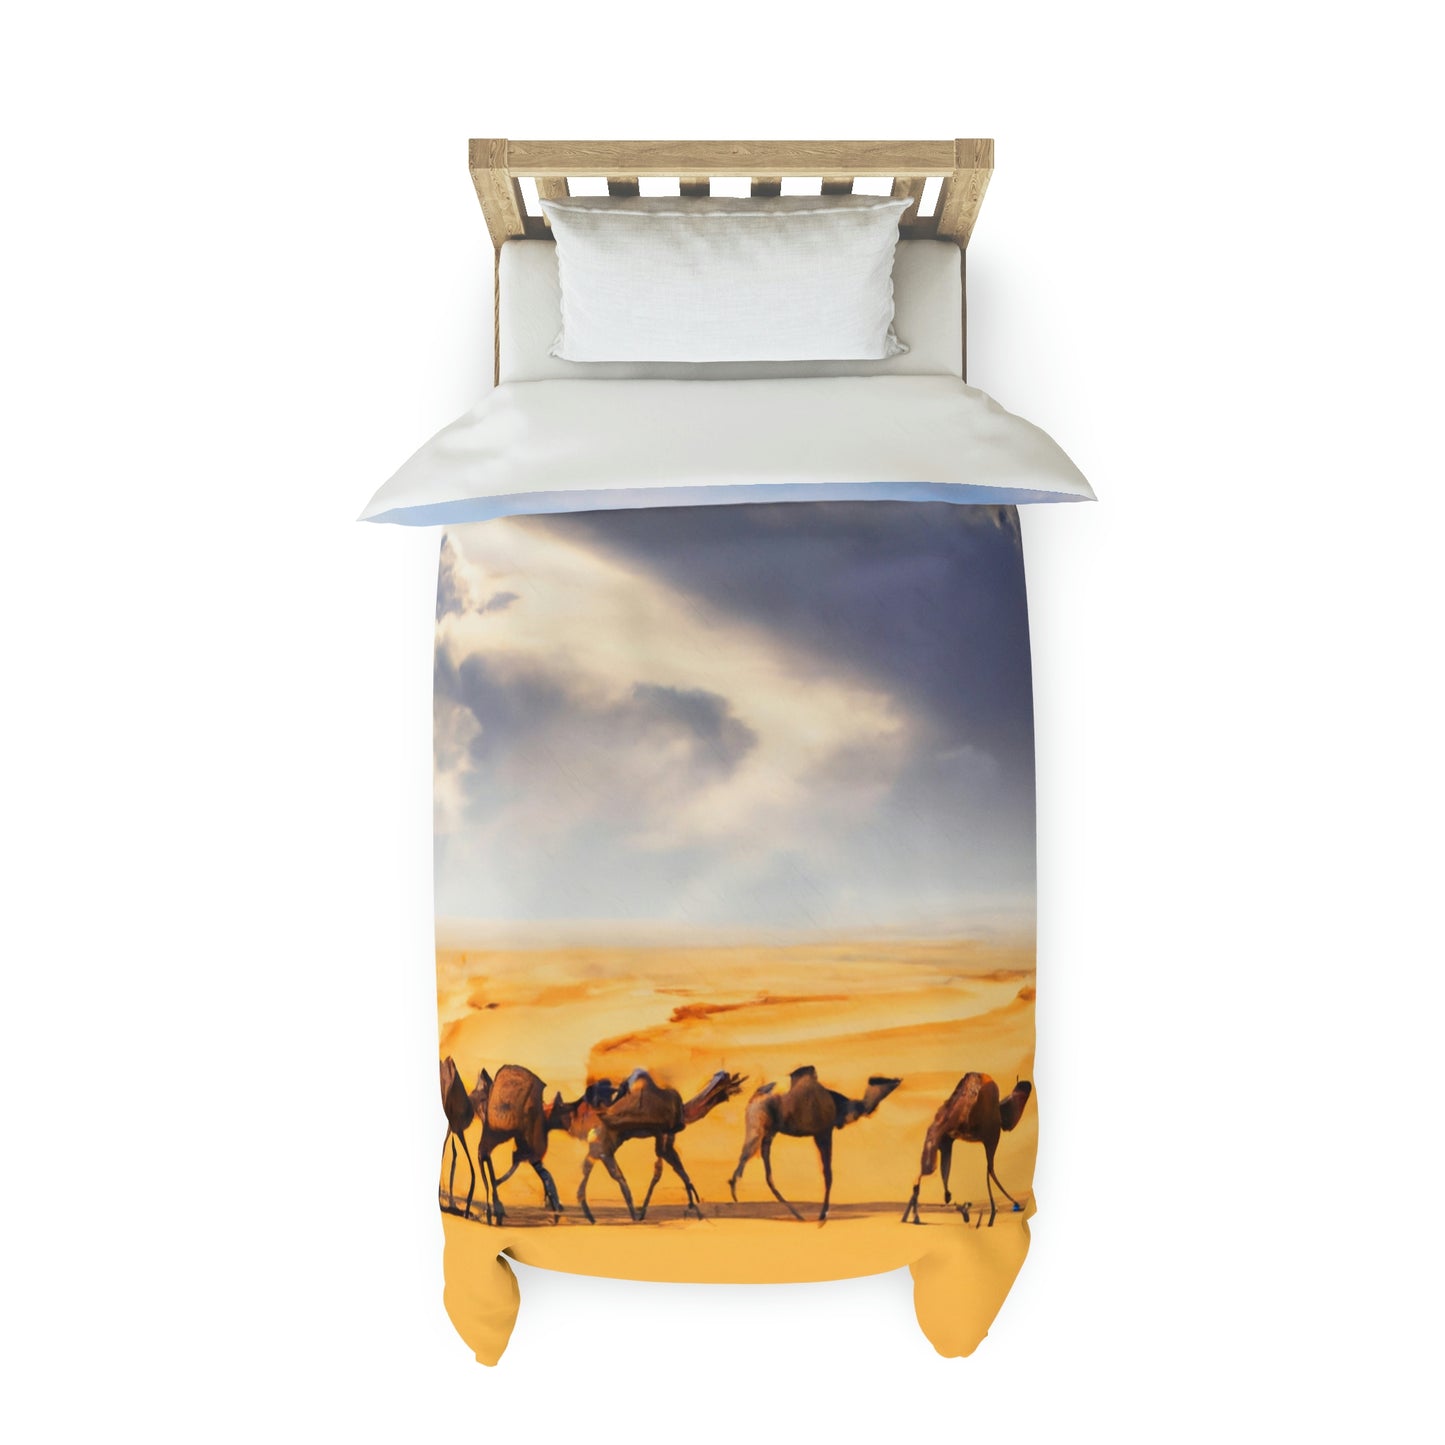 Duvet Cover - Camel Caravan